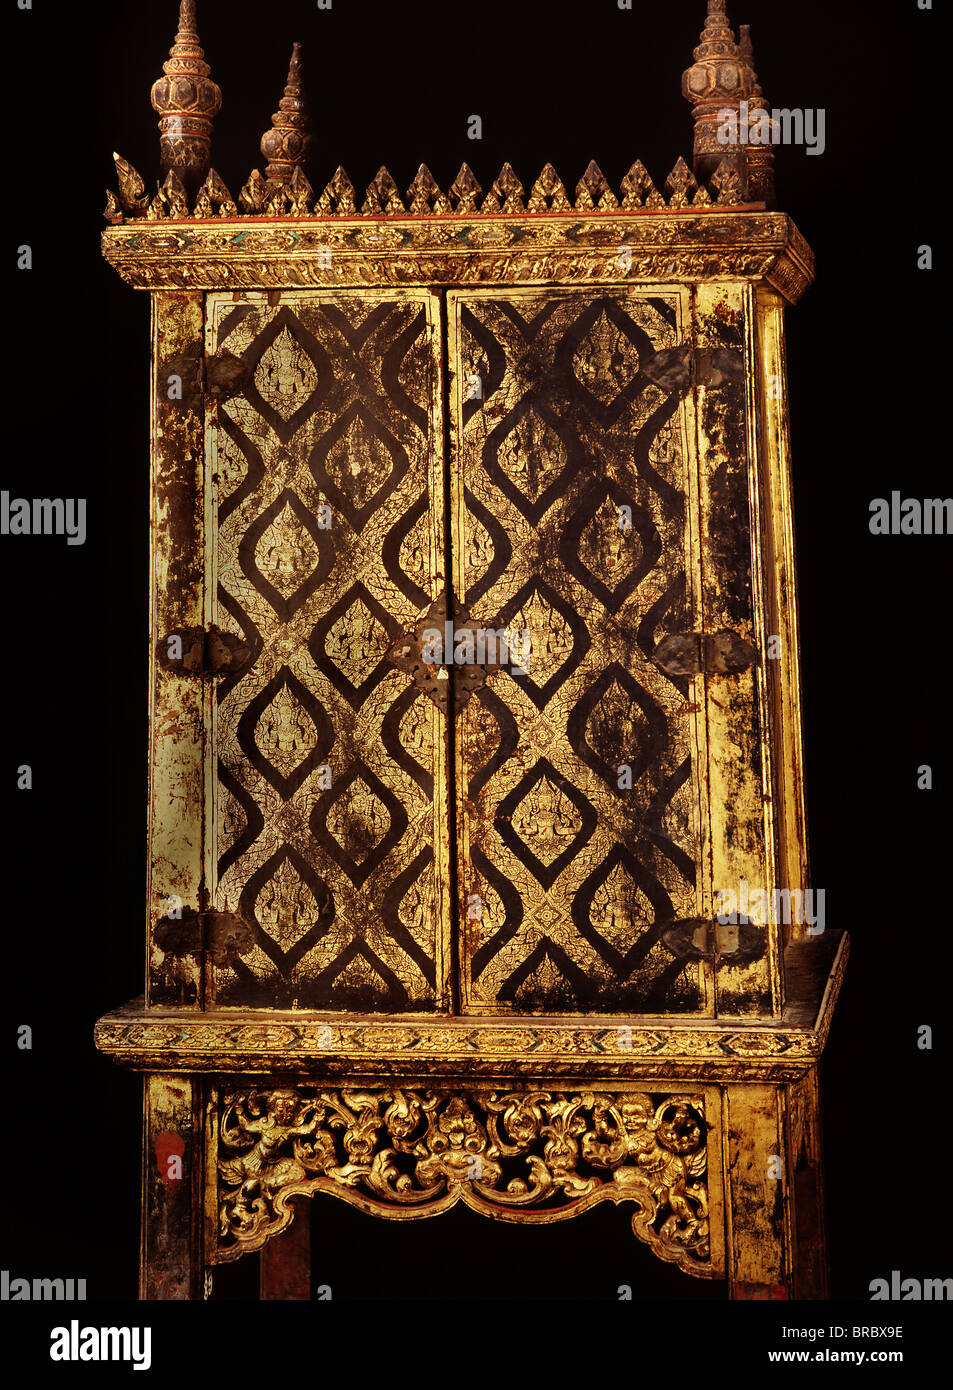 Cabinet laqué manuscrit datant du règne du Roi Narai au 17ème siècle, la Thaïlande Banque D'Images